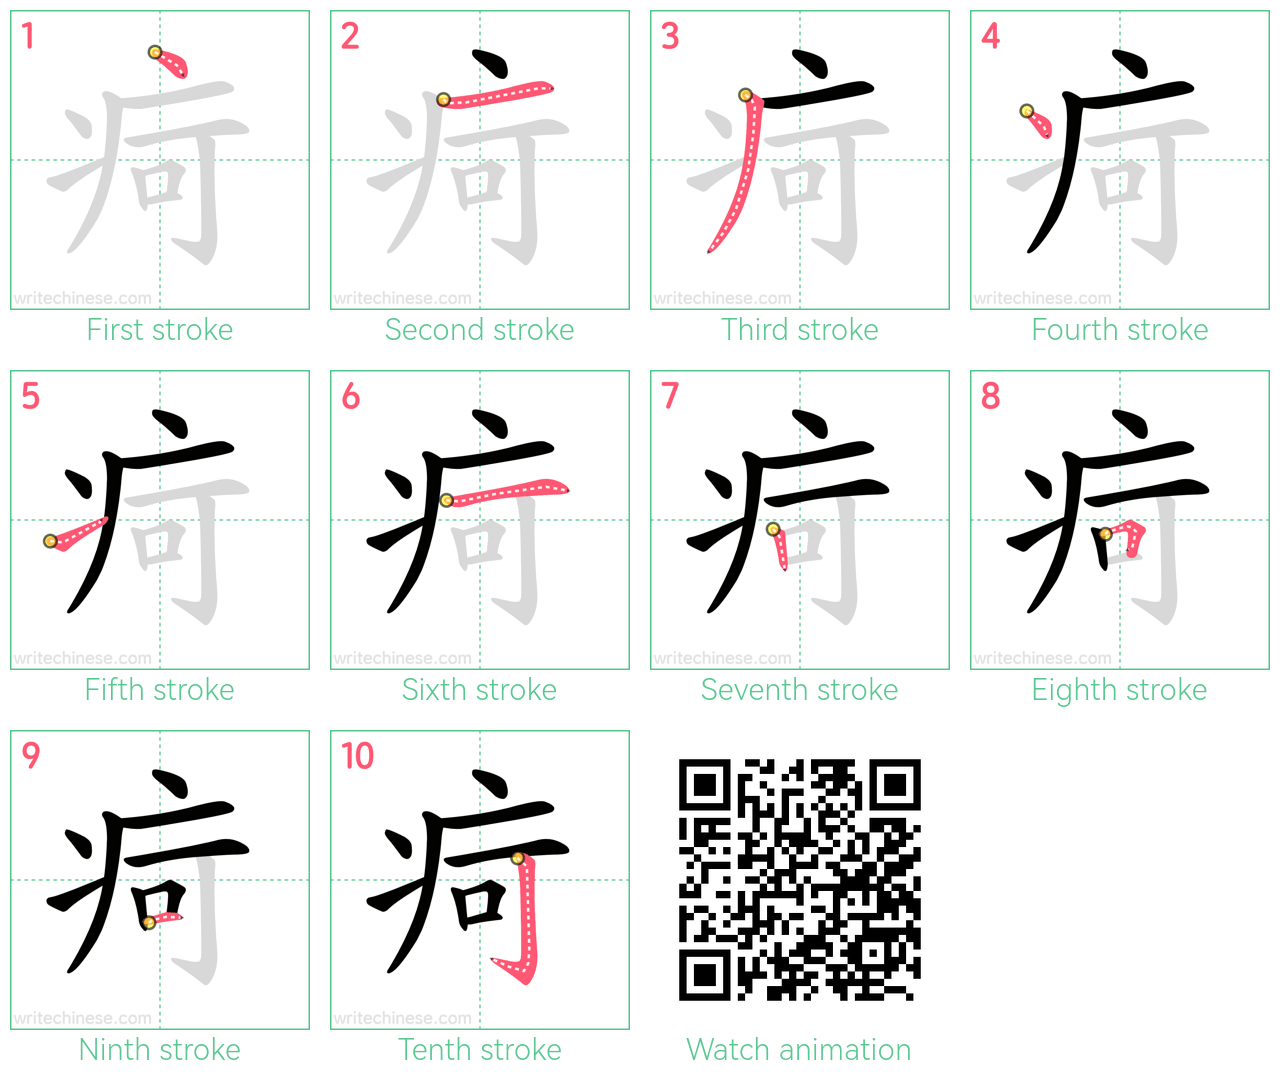 疴 step-by-step stroke order diagrams